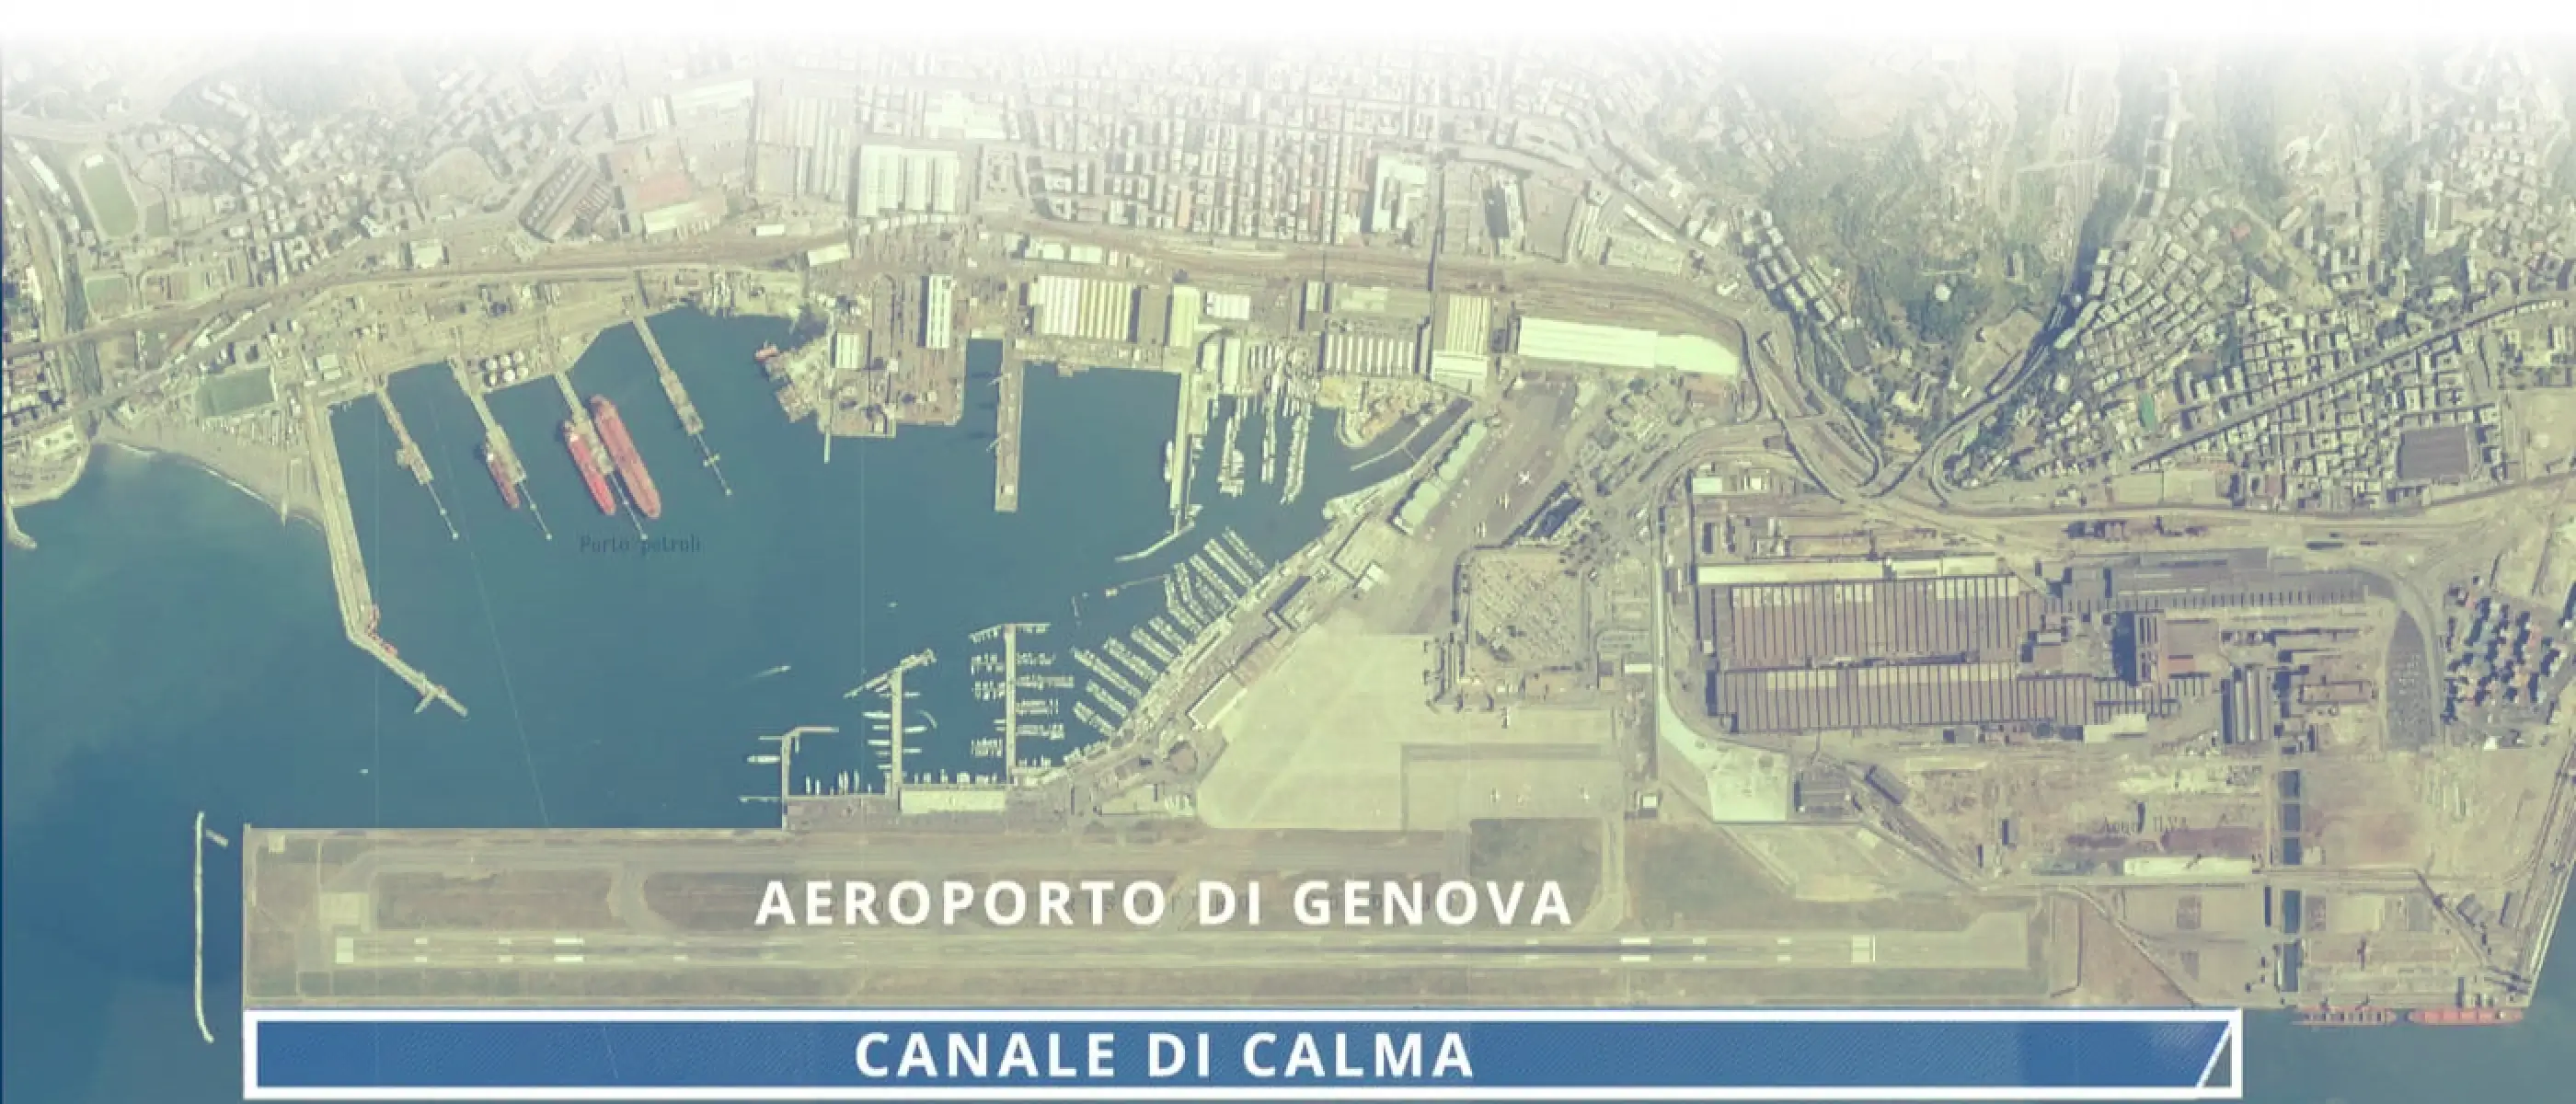 Aeroporto di Genova - Canale di Calma